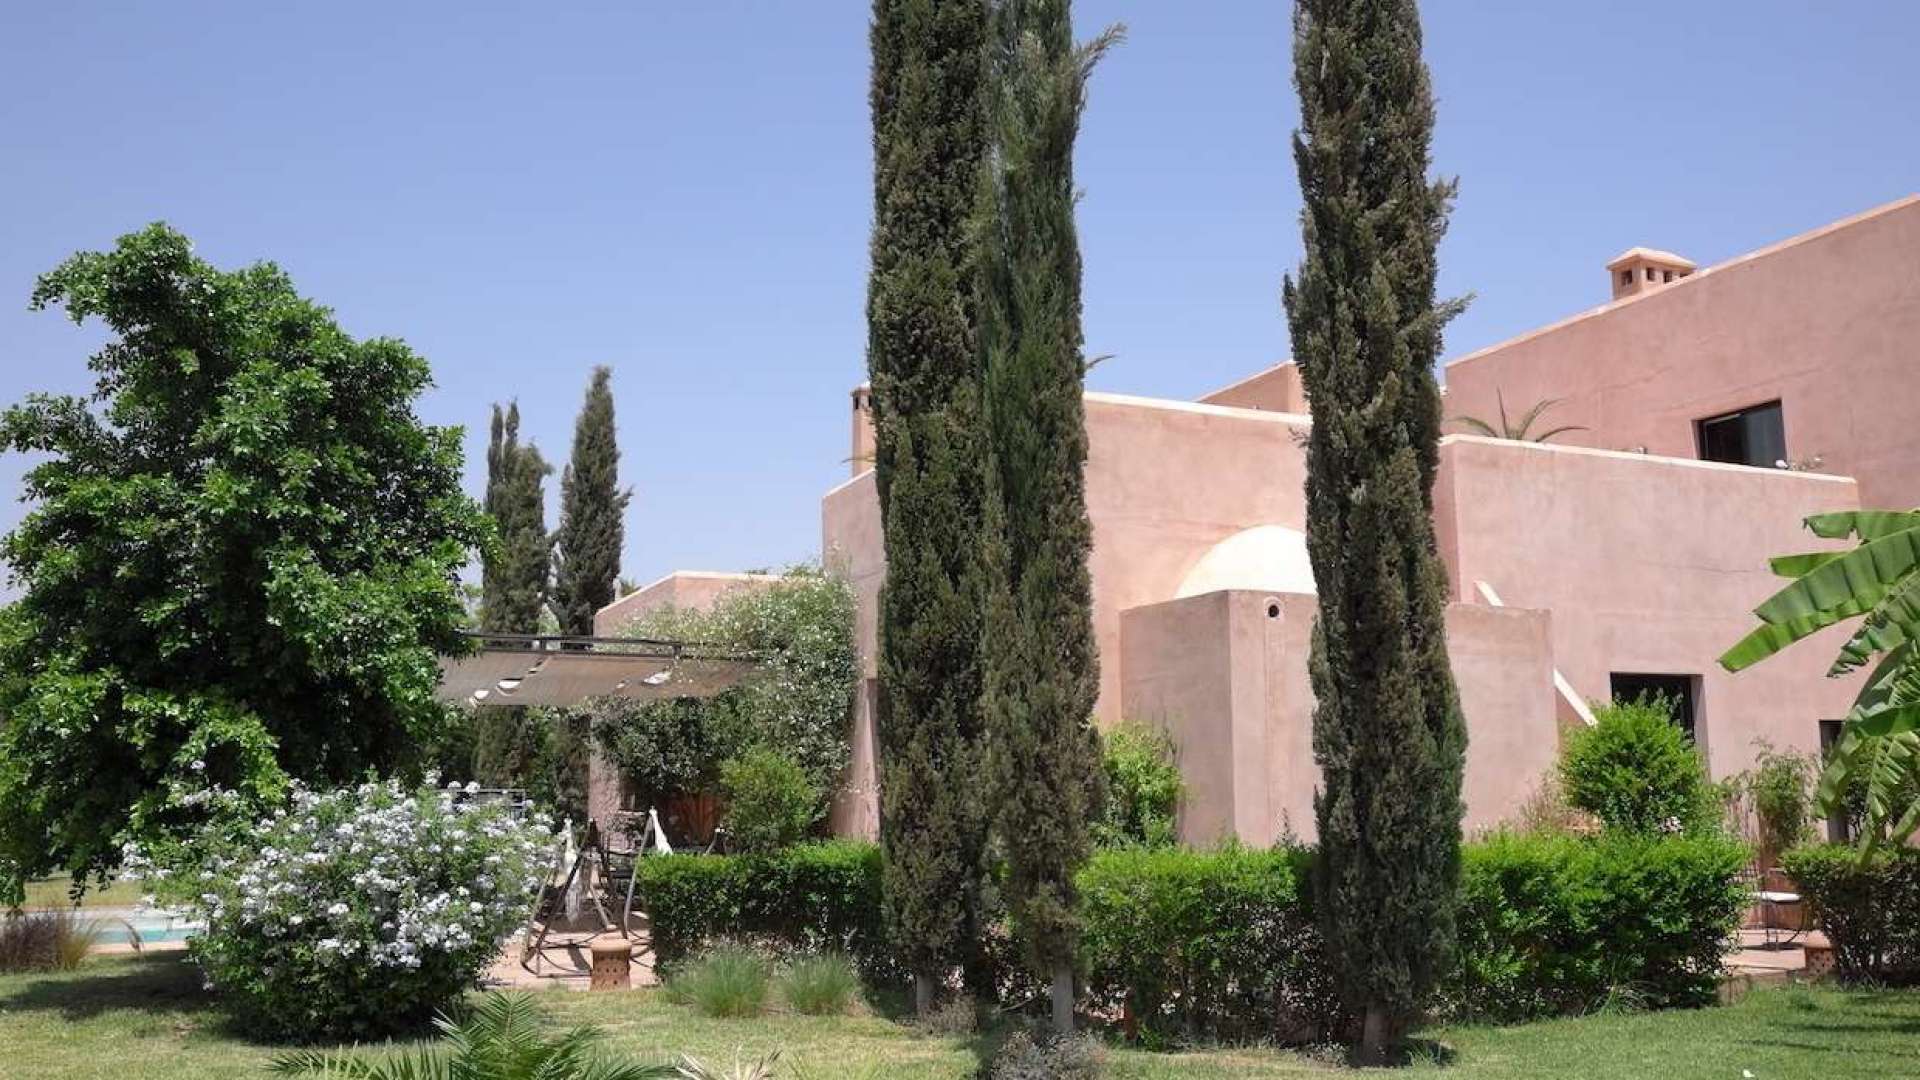 Location de vacances,Villa,Villa de charme à Marrakech, calme et repos au coeur d’un superbe parc arboré,Marrakech,Chrifia